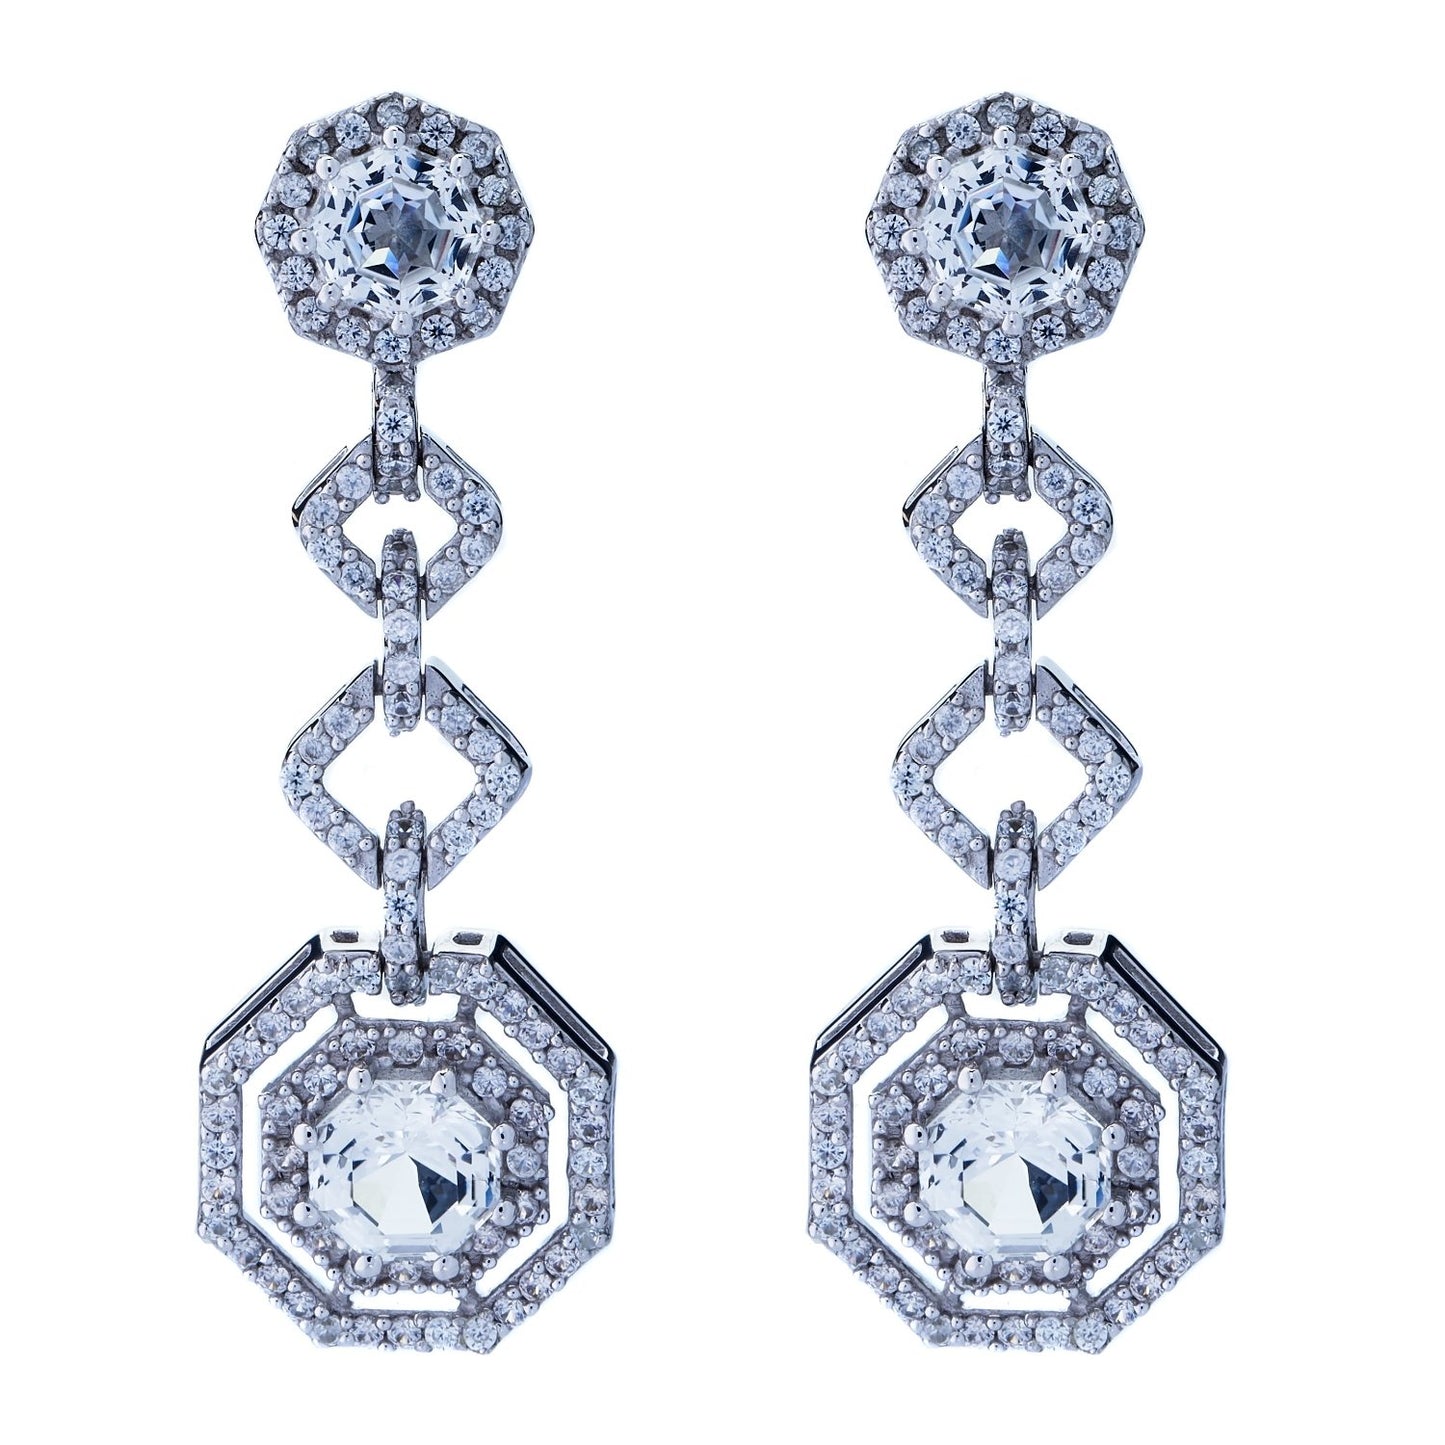 Statement White Topaz-Diamond Look FARA Cut & White Zircon Link Drop Earrings, Silver